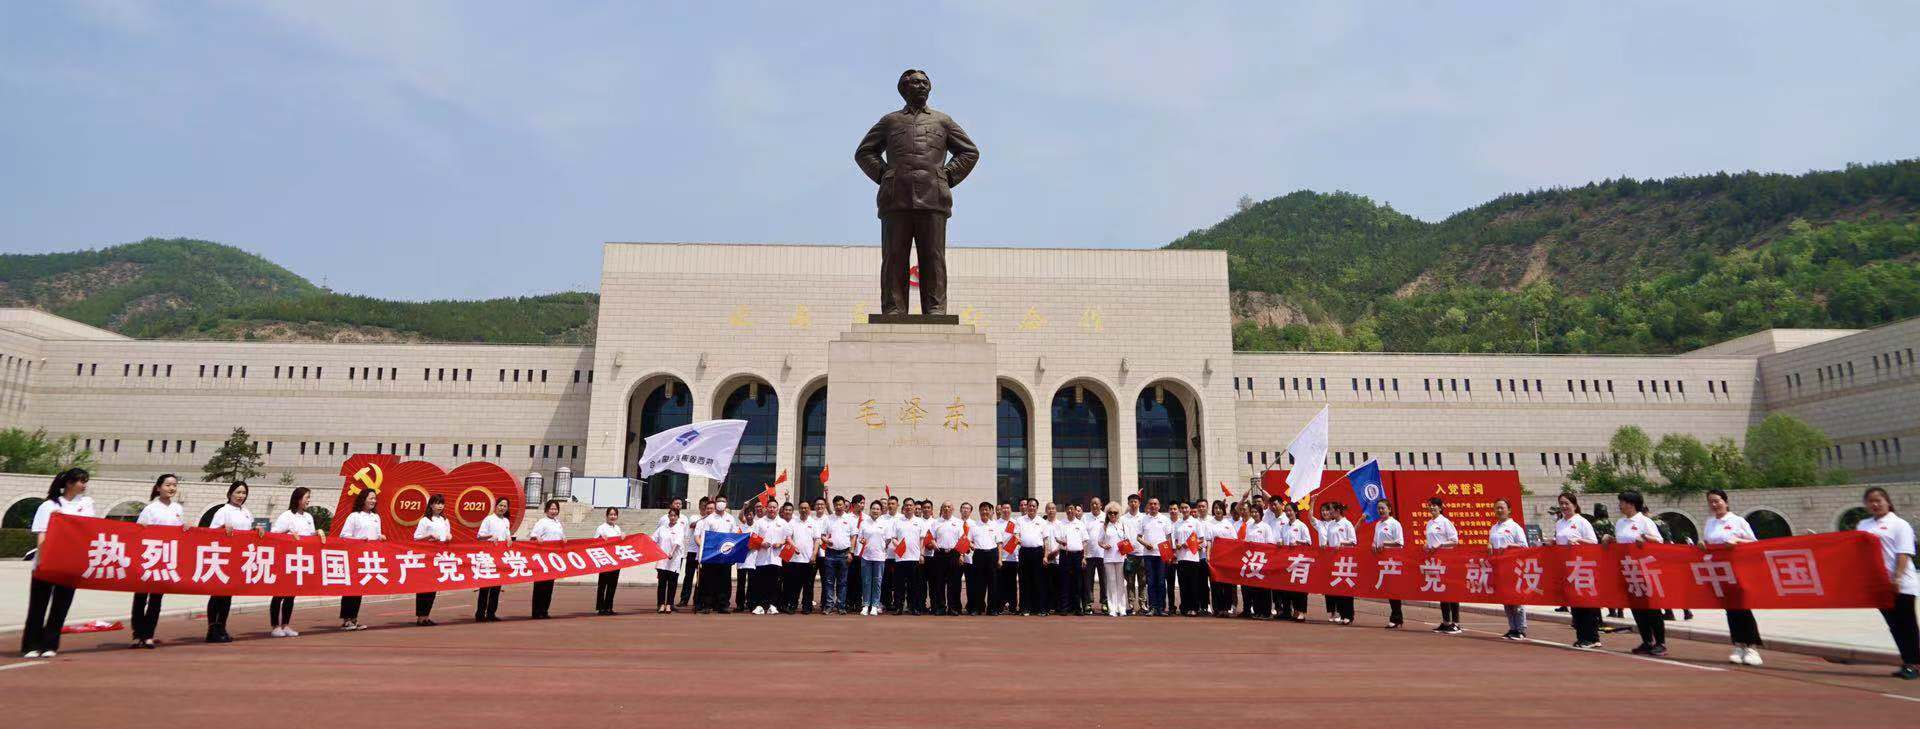 懂车集团参加庆祝中国共产党成立100周年“2021年汽车文化红色之旅”活动